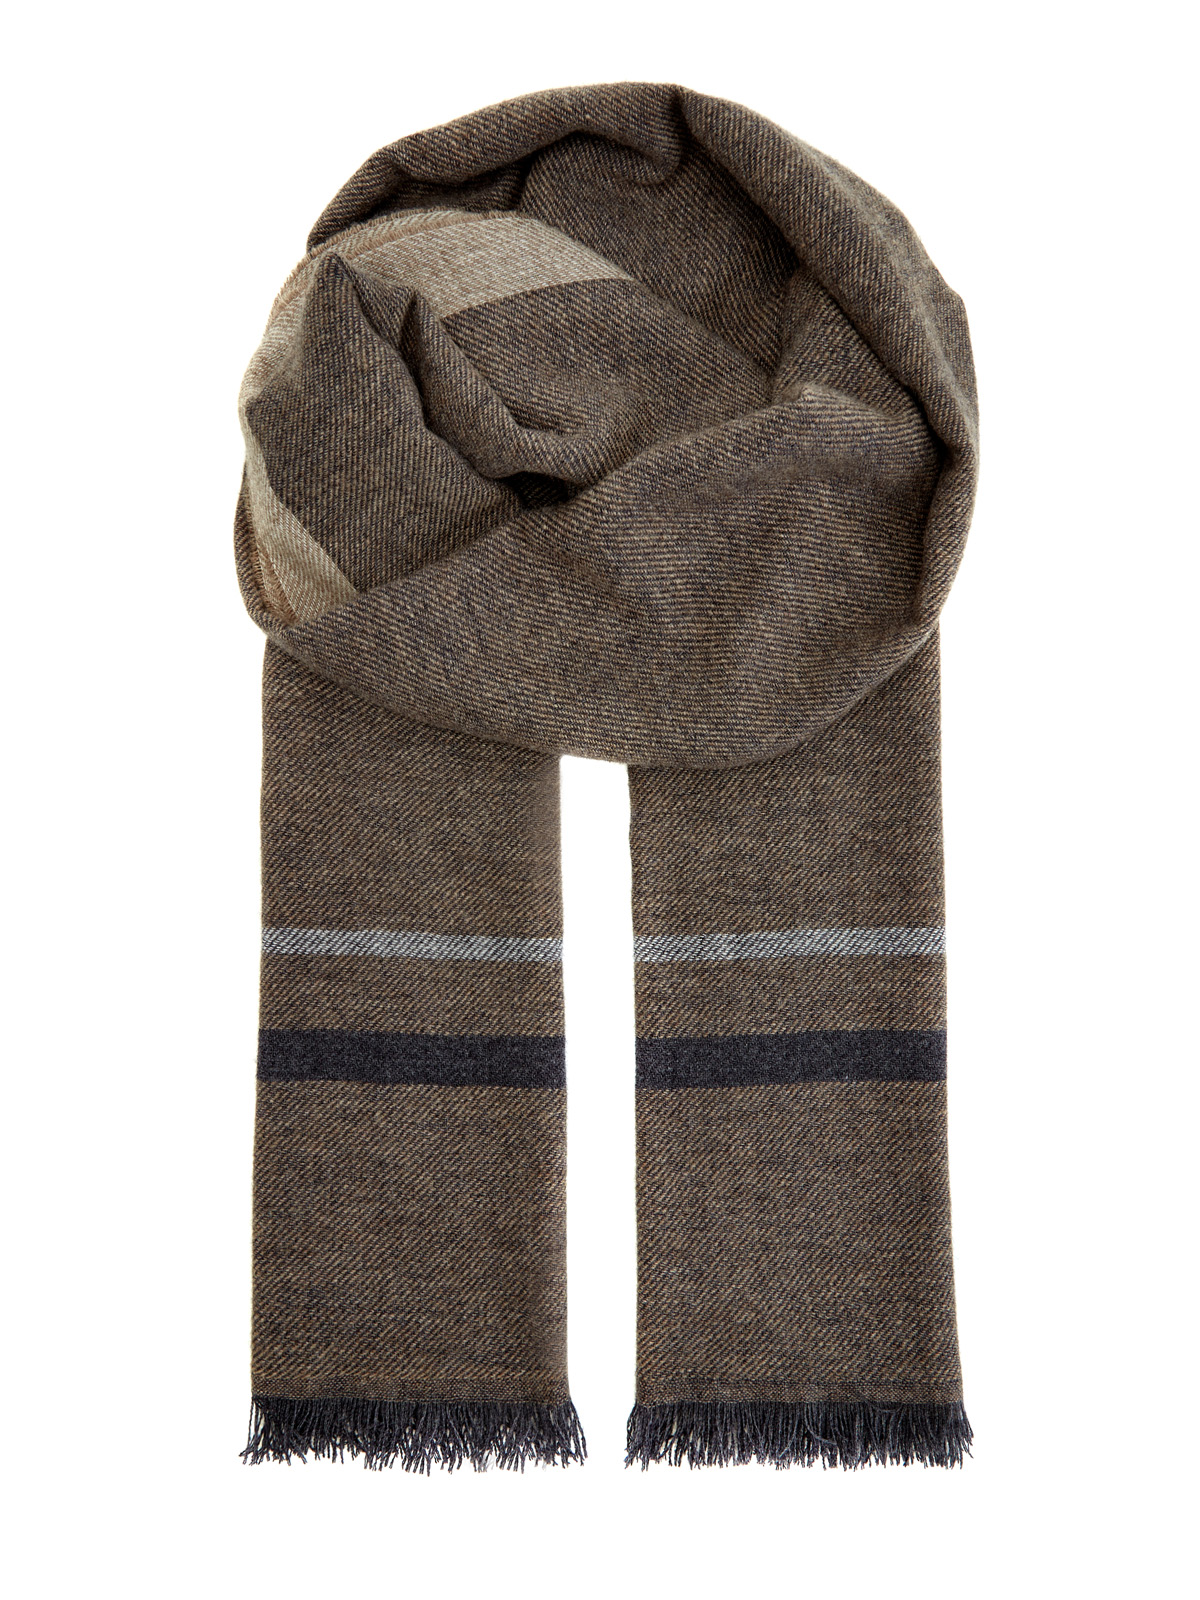 Теплый шерстяной шарф с волокнами шелка и кашемира BERTOLO CASHMERE, цвет коричневый, размер 58